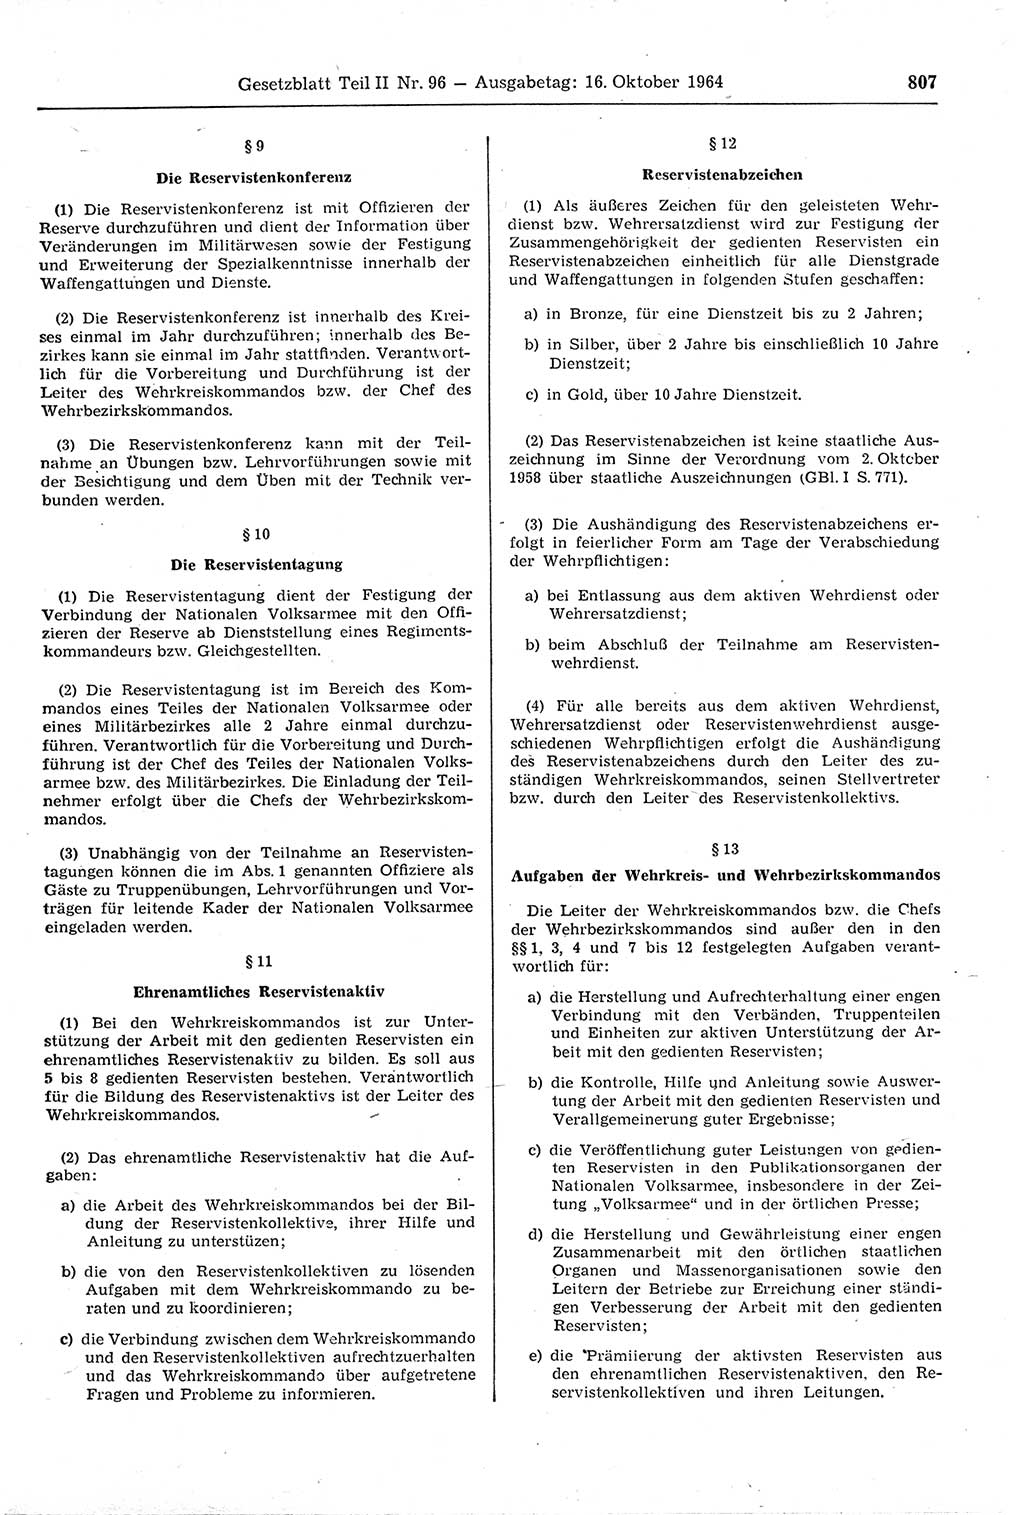 Gesetzblatt (GBl.) der Deutschen Demokratischen Republik (DDR) Teil ⅠⅠ 1964, Seite 807 (GBl. DDR ⅠⅠ 1964, S. 807)